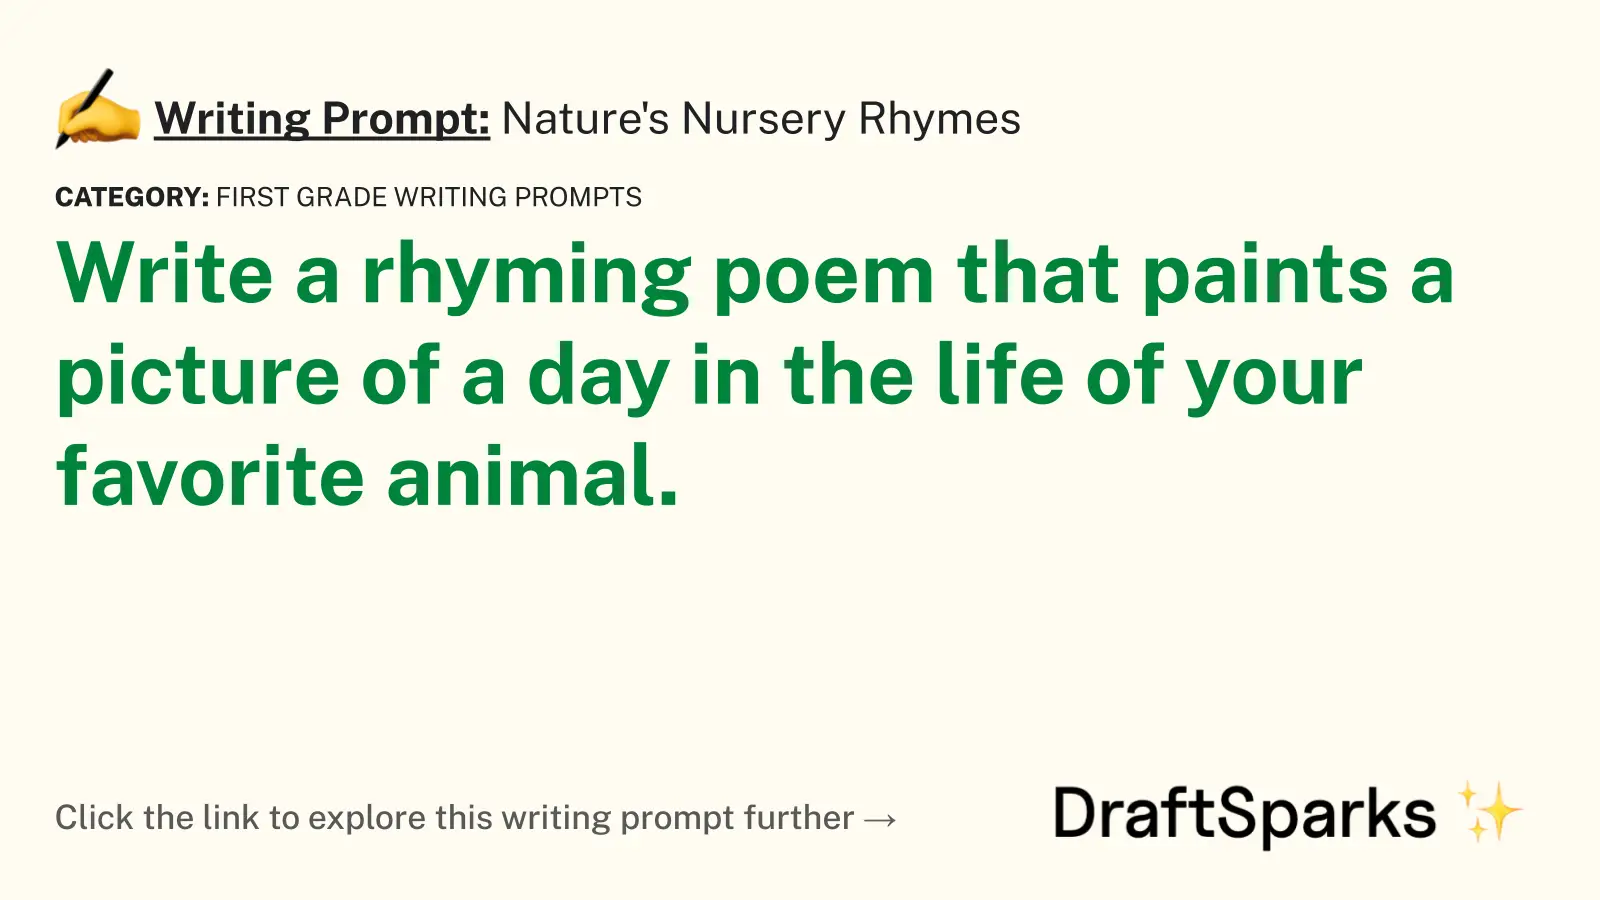 Nature’s Nursery Rhymes